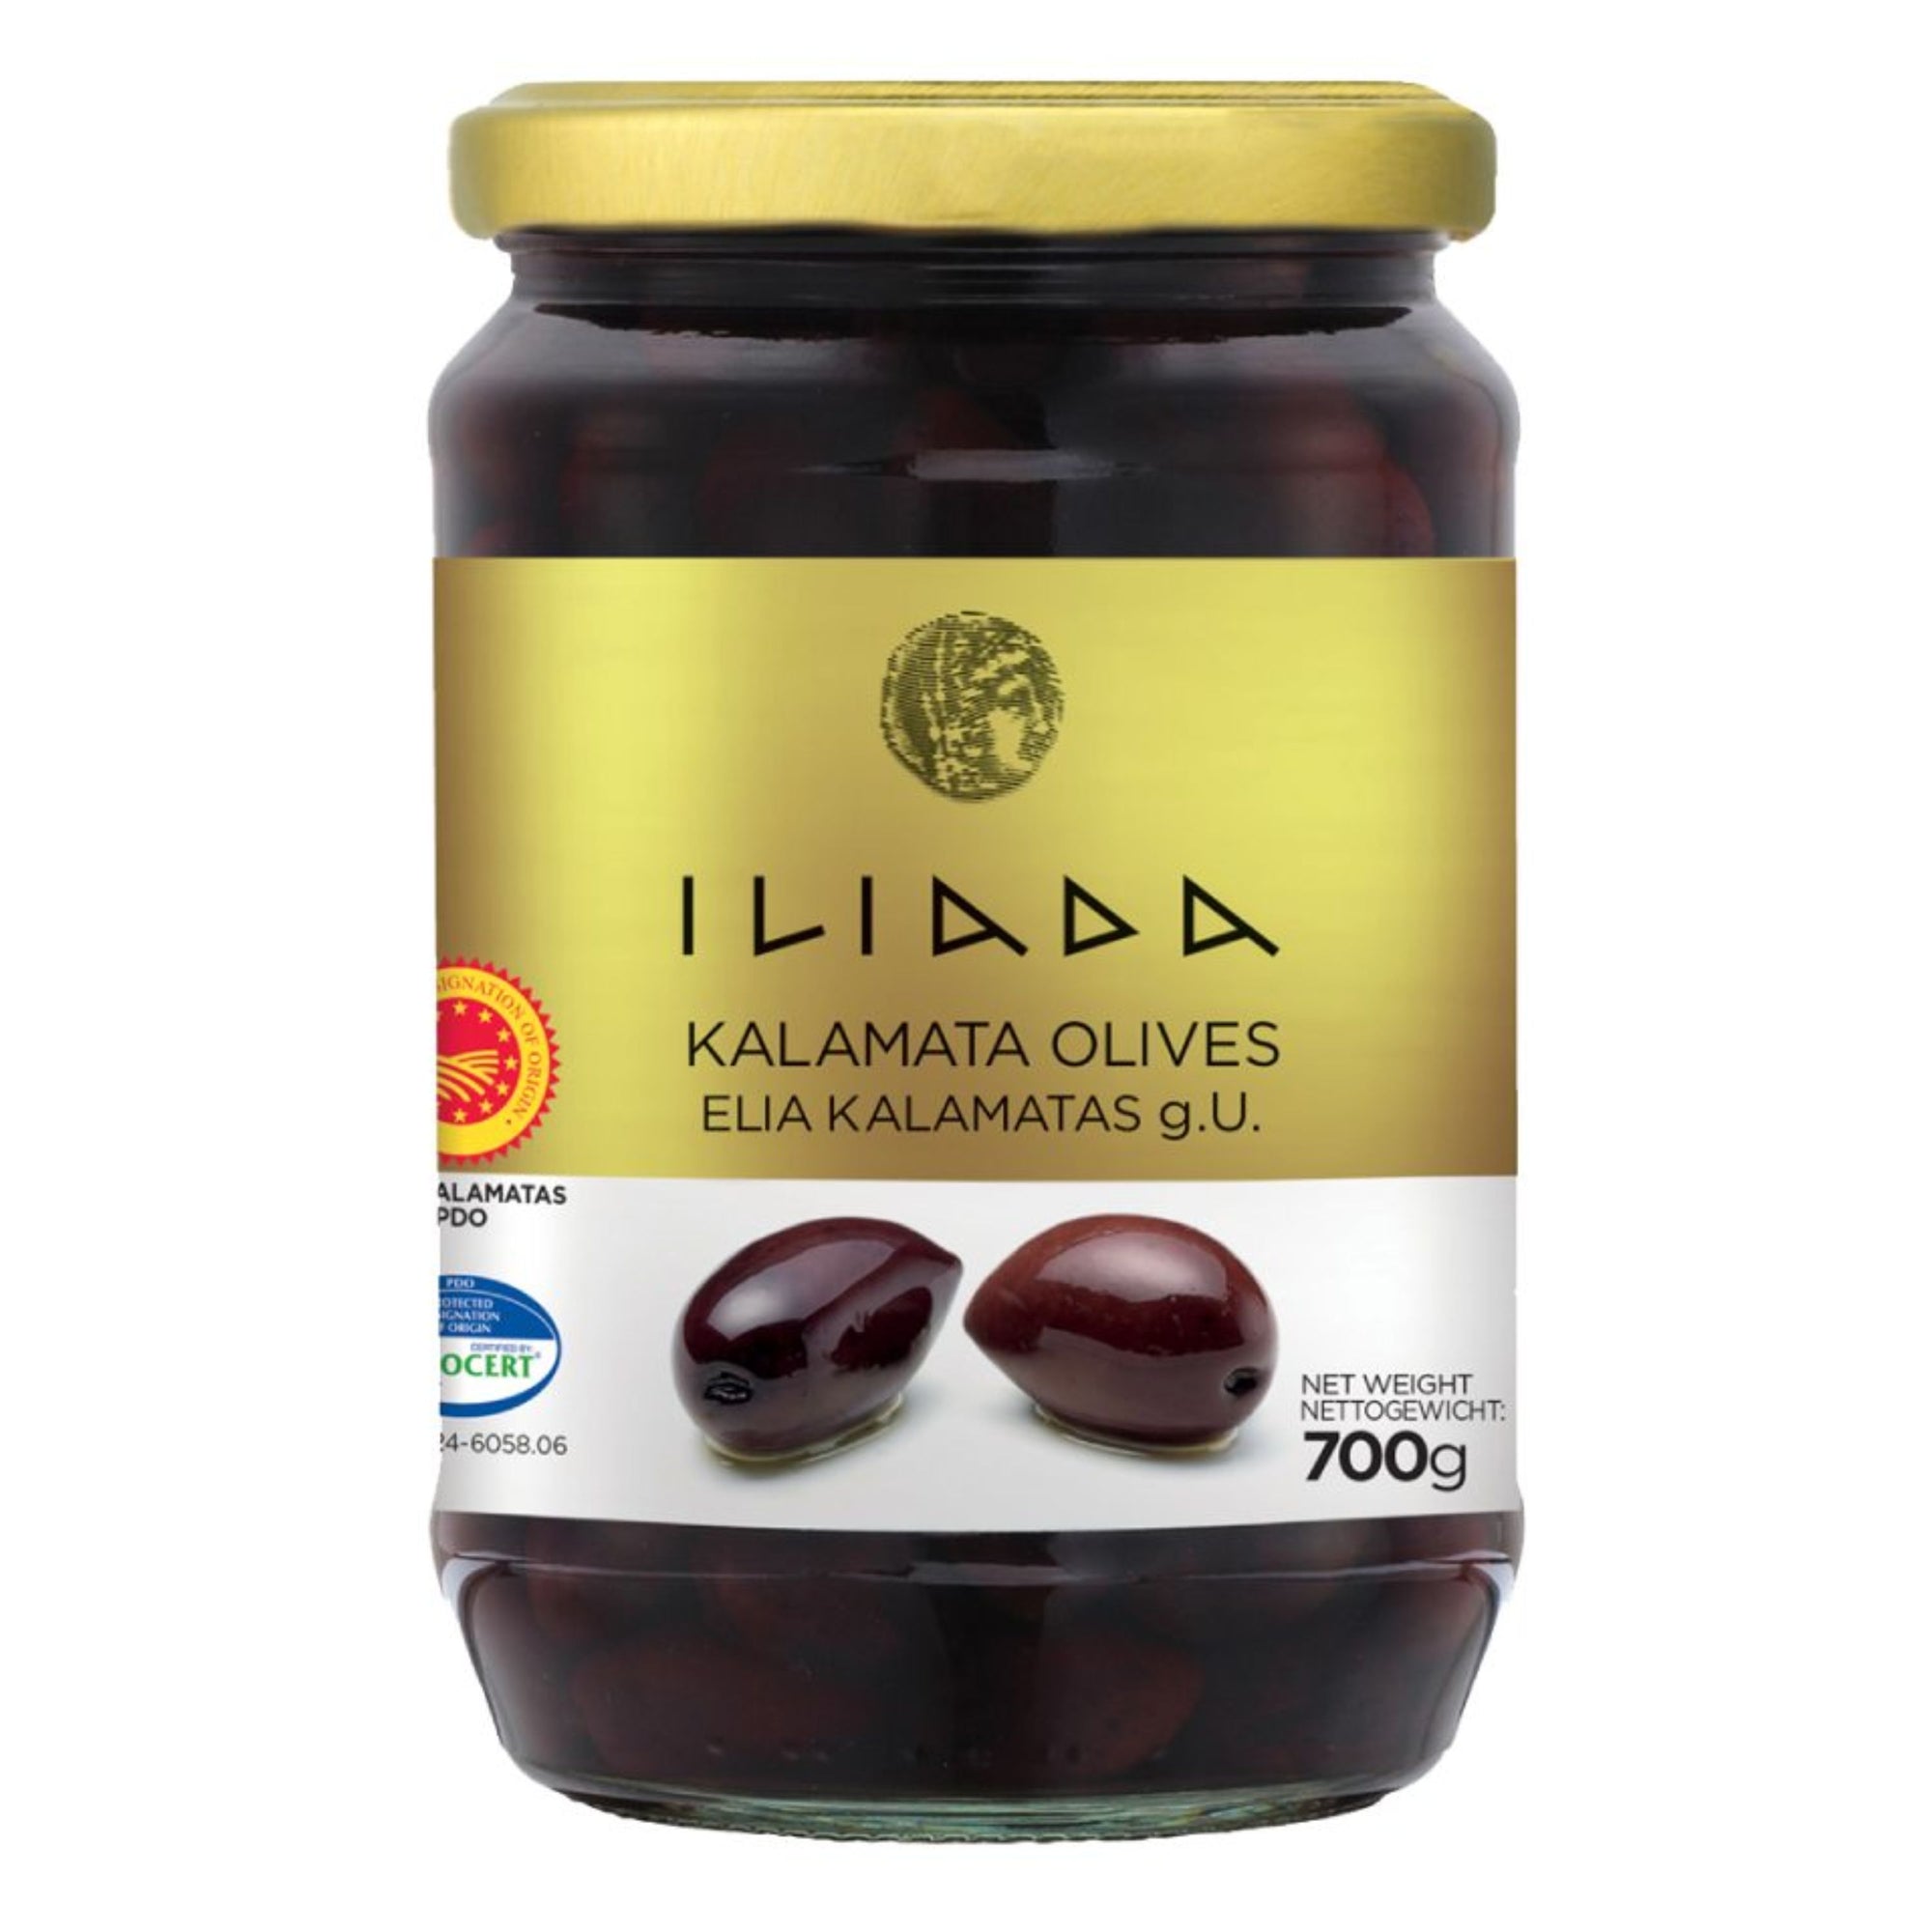 Kalamata Whole Olives 'Iliada' 700g